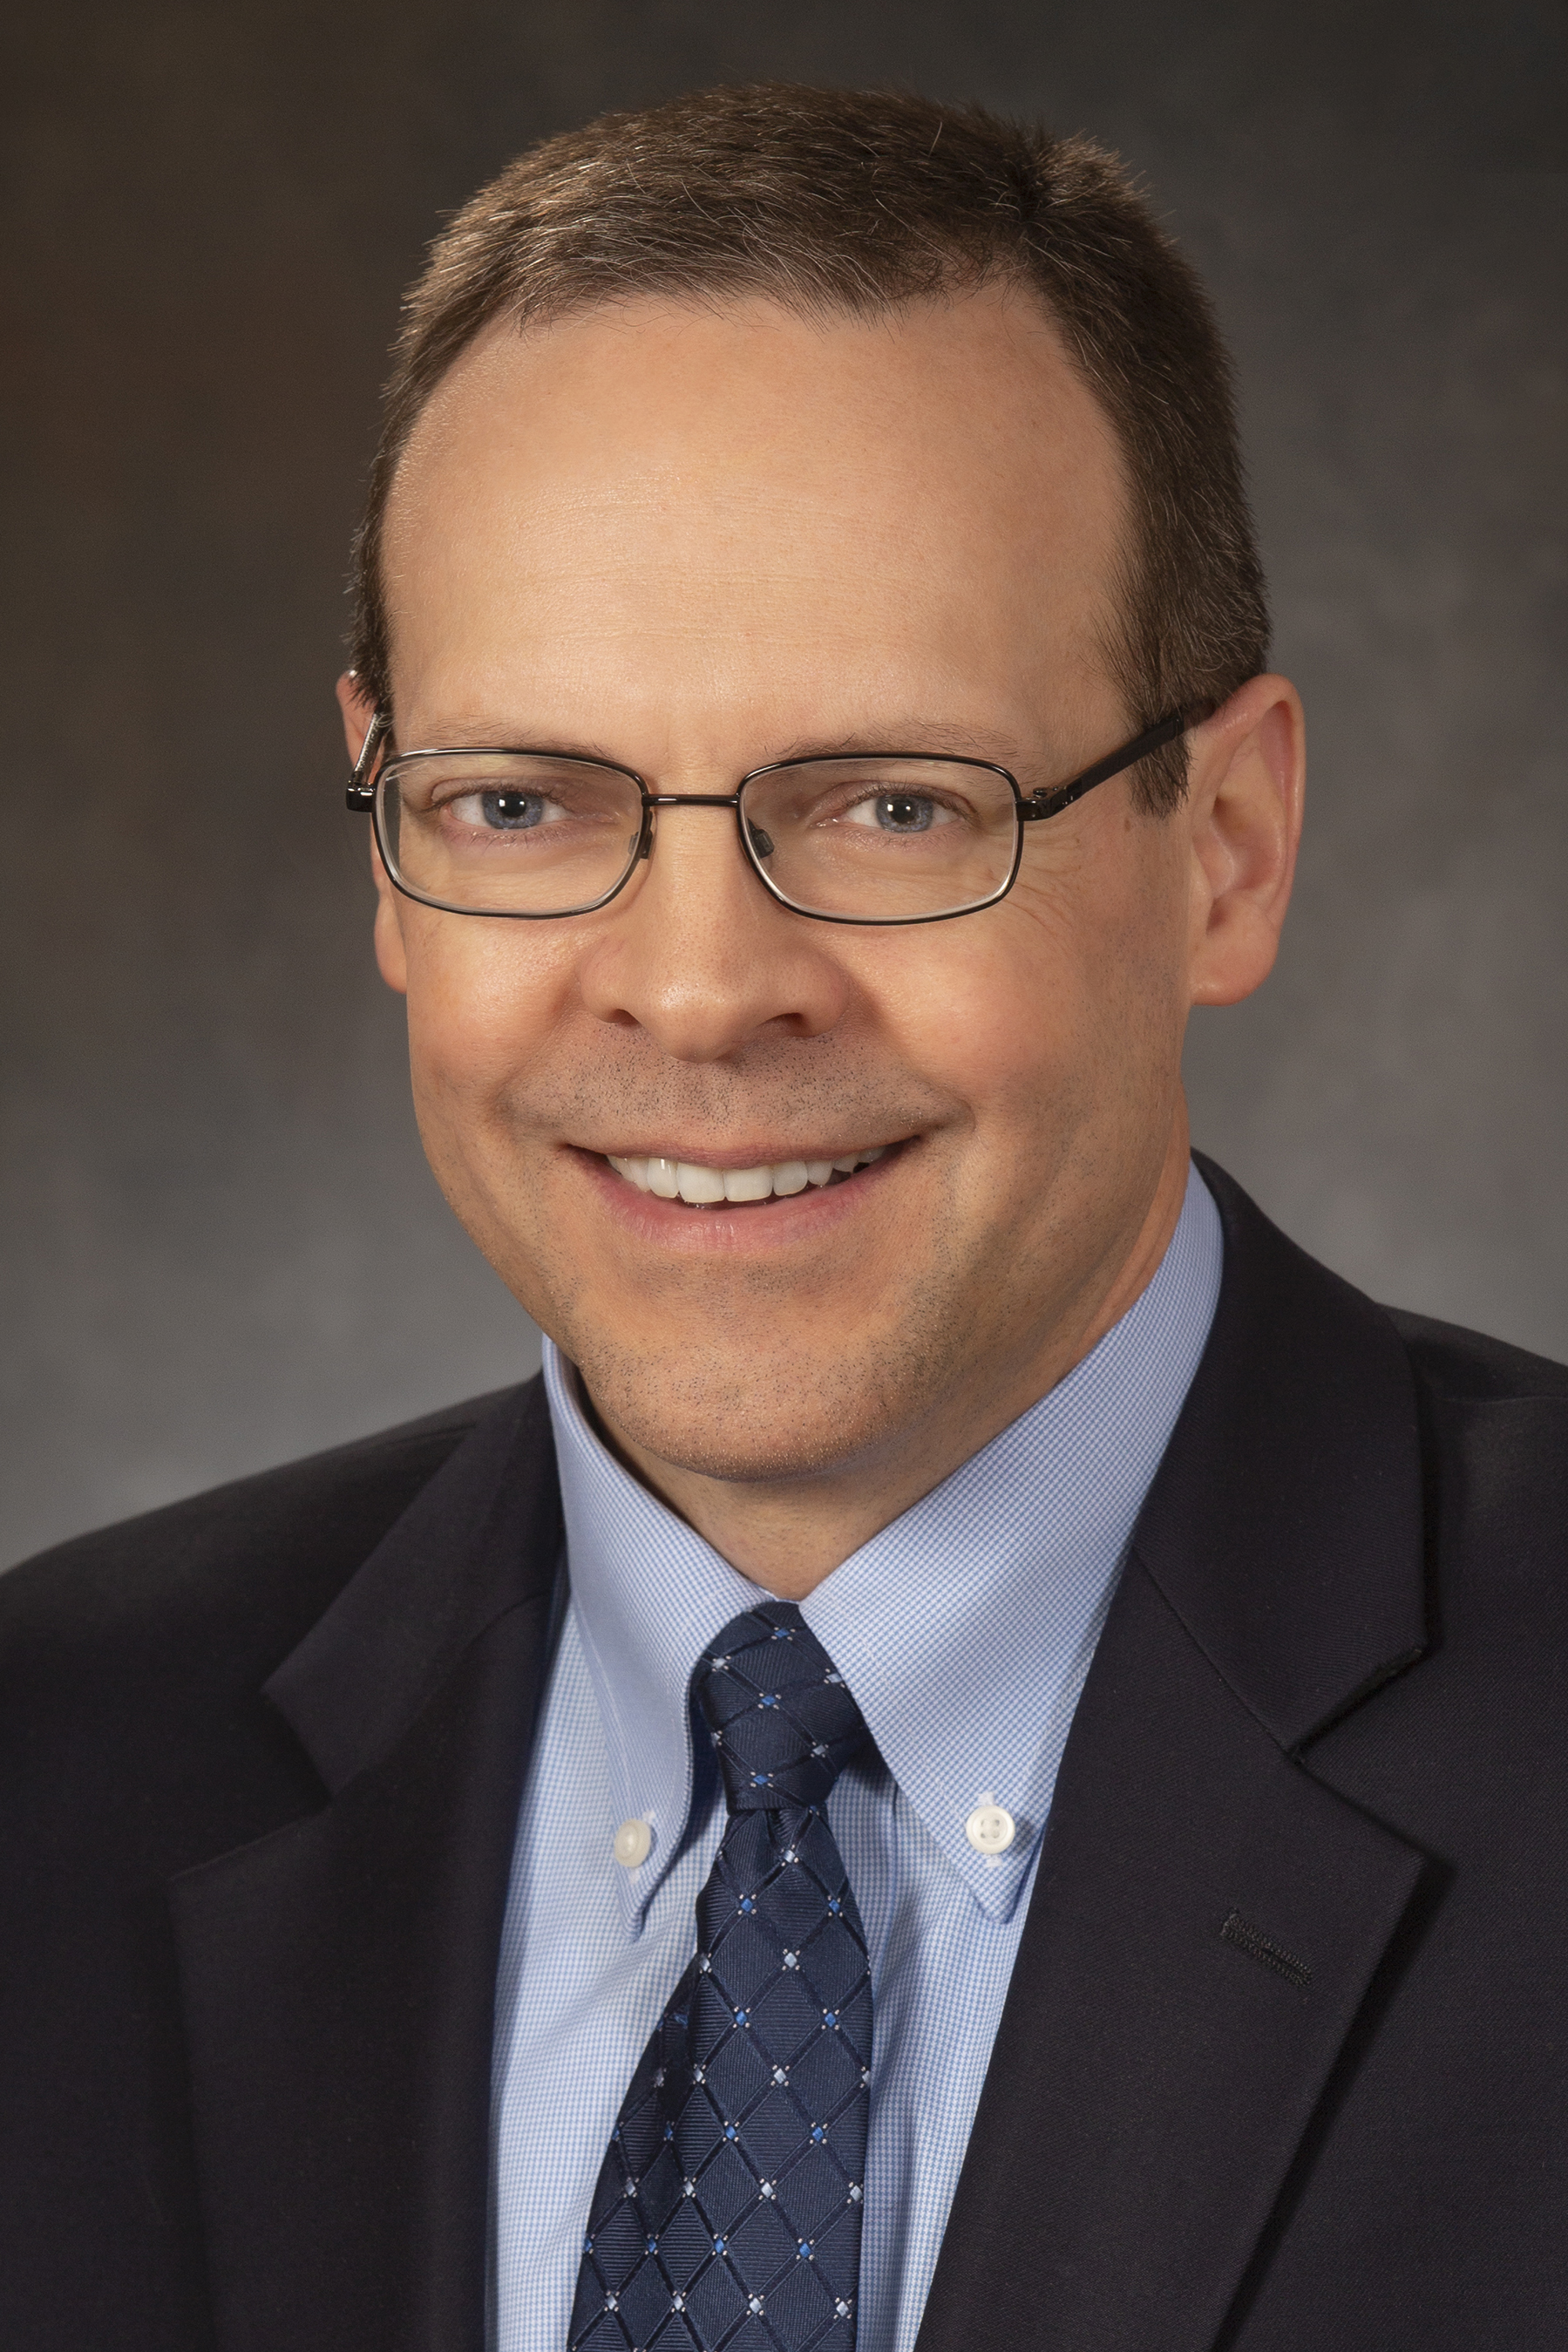 David Smith, senior vice president, Mercer Capital.